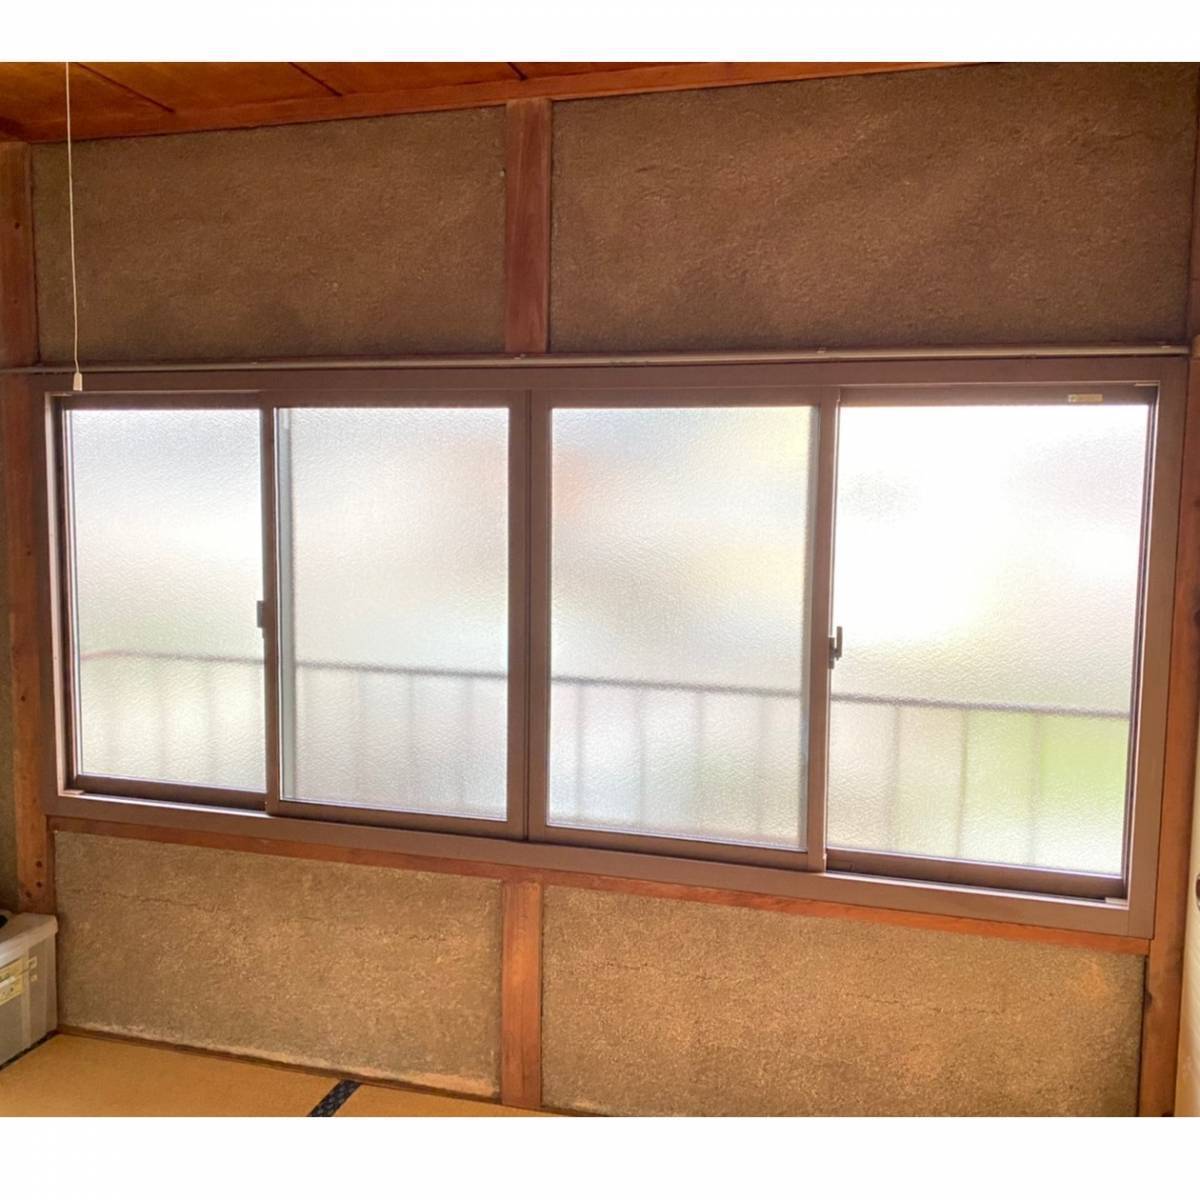 窓工房テラムラの木製サッシの隙間風がひどいのでアルミサッシに交換したいの施工後の写真1